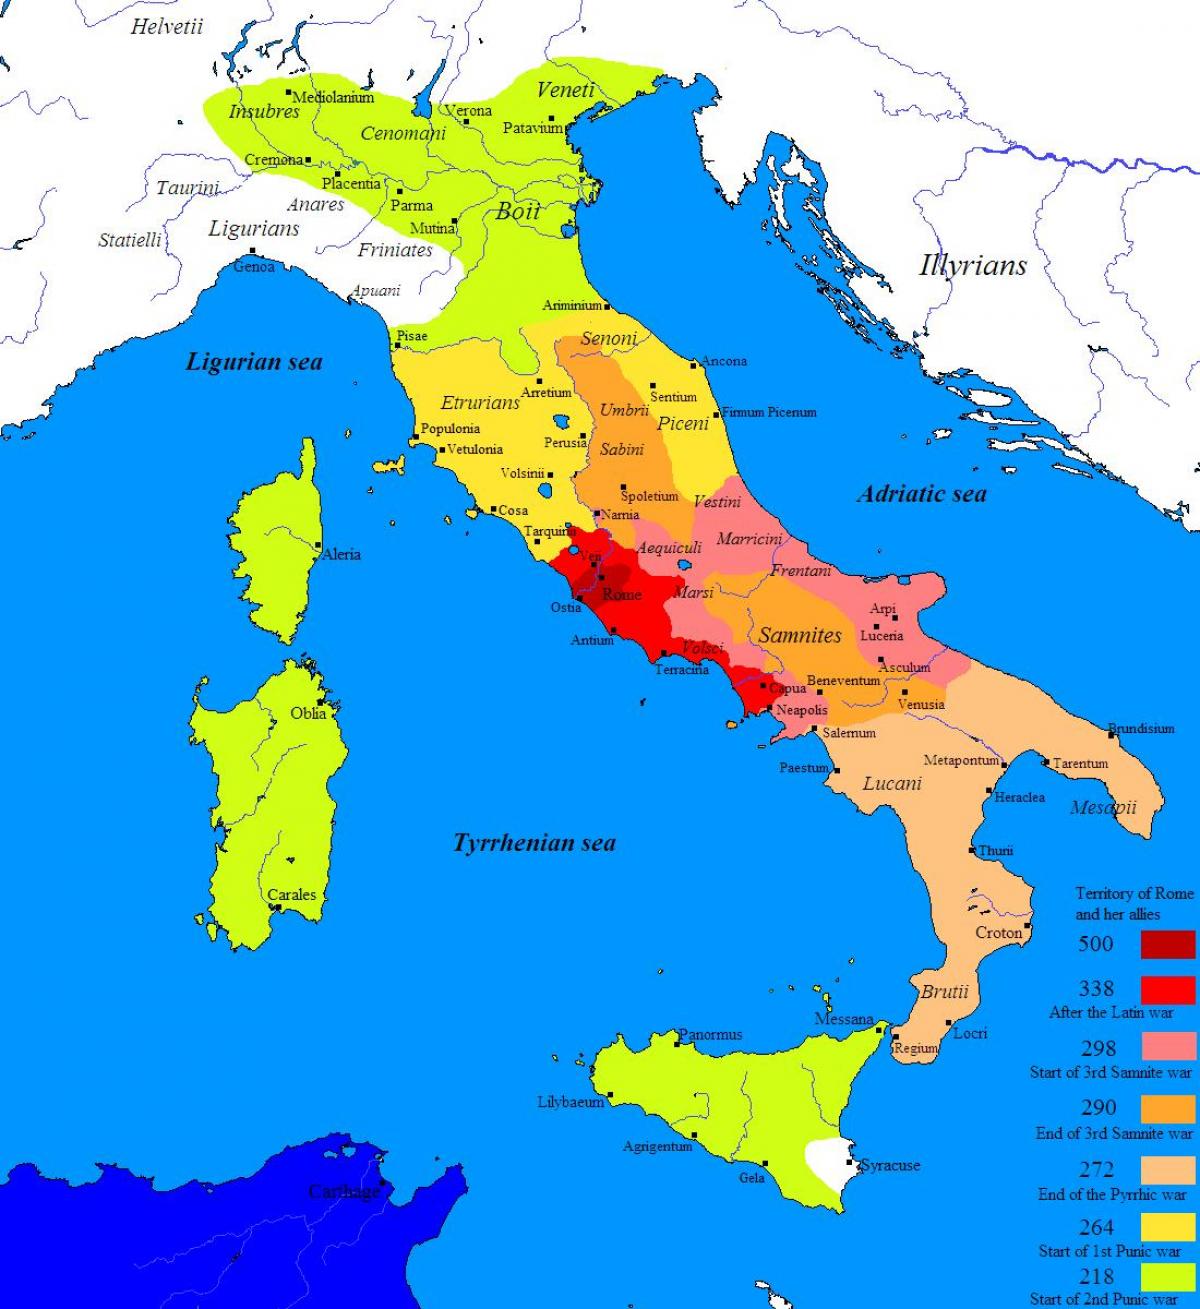 Mapa de la antigua Roma y sus alrededores